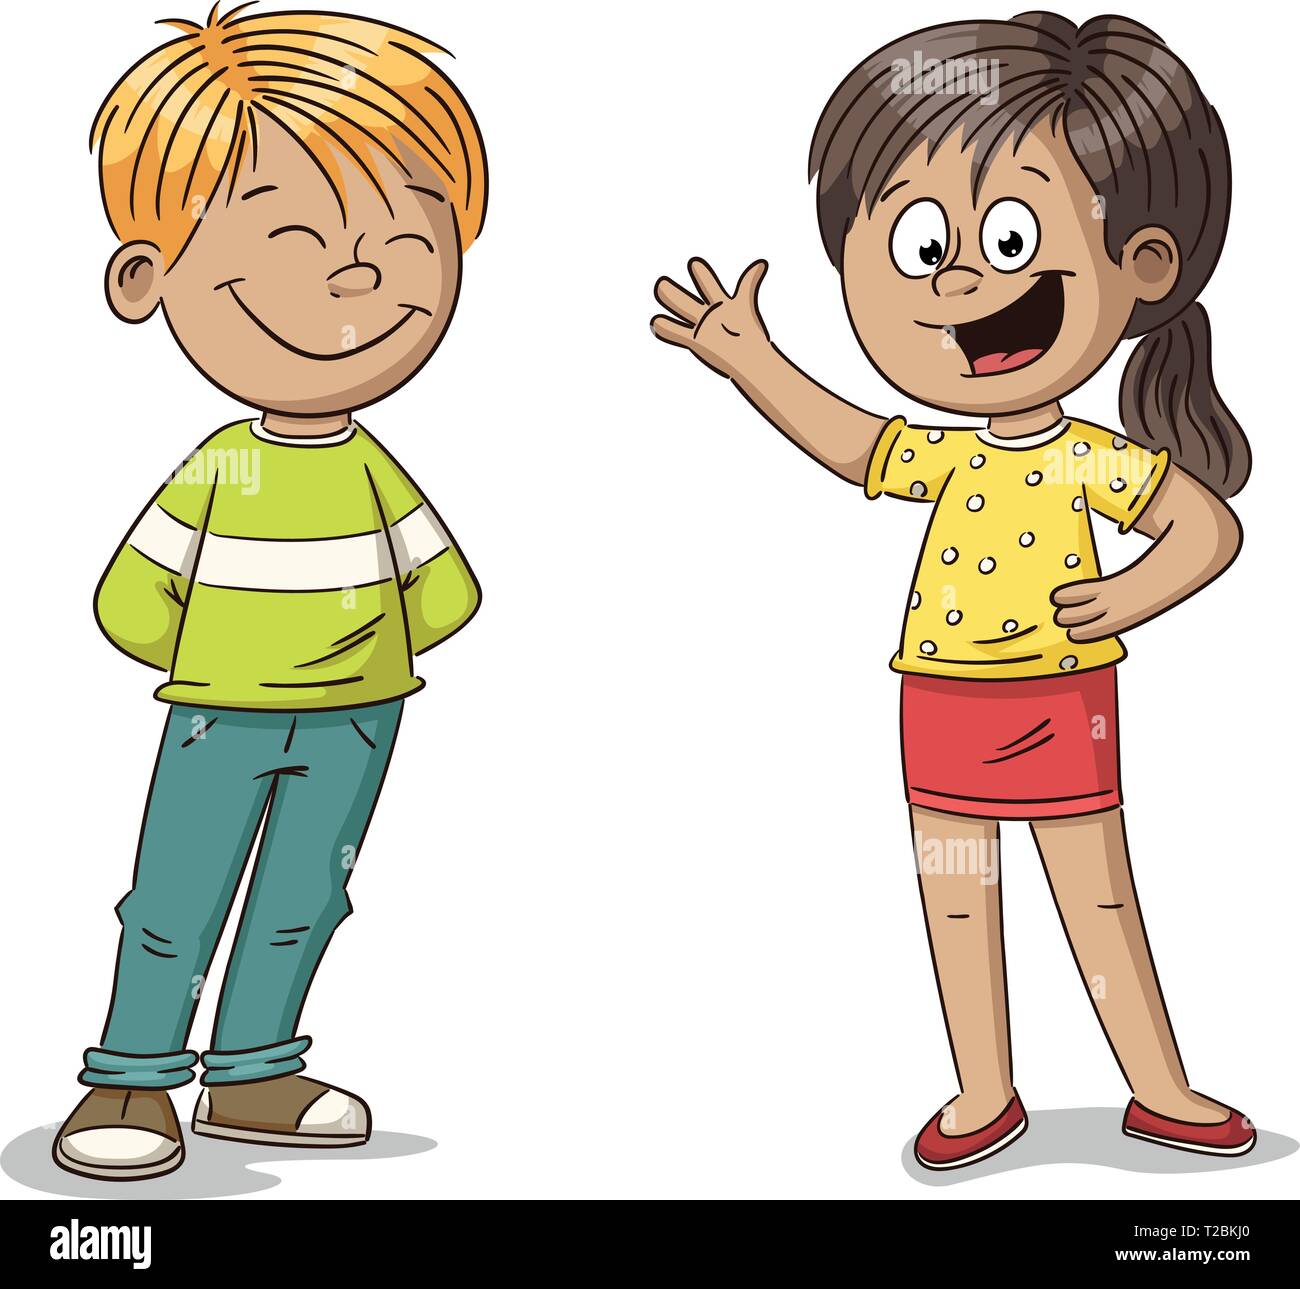 Happy Cartoon Junge Und Mädchen Hand Zeichnen Vector Illustration Stock Vektorgrafik Alamy 